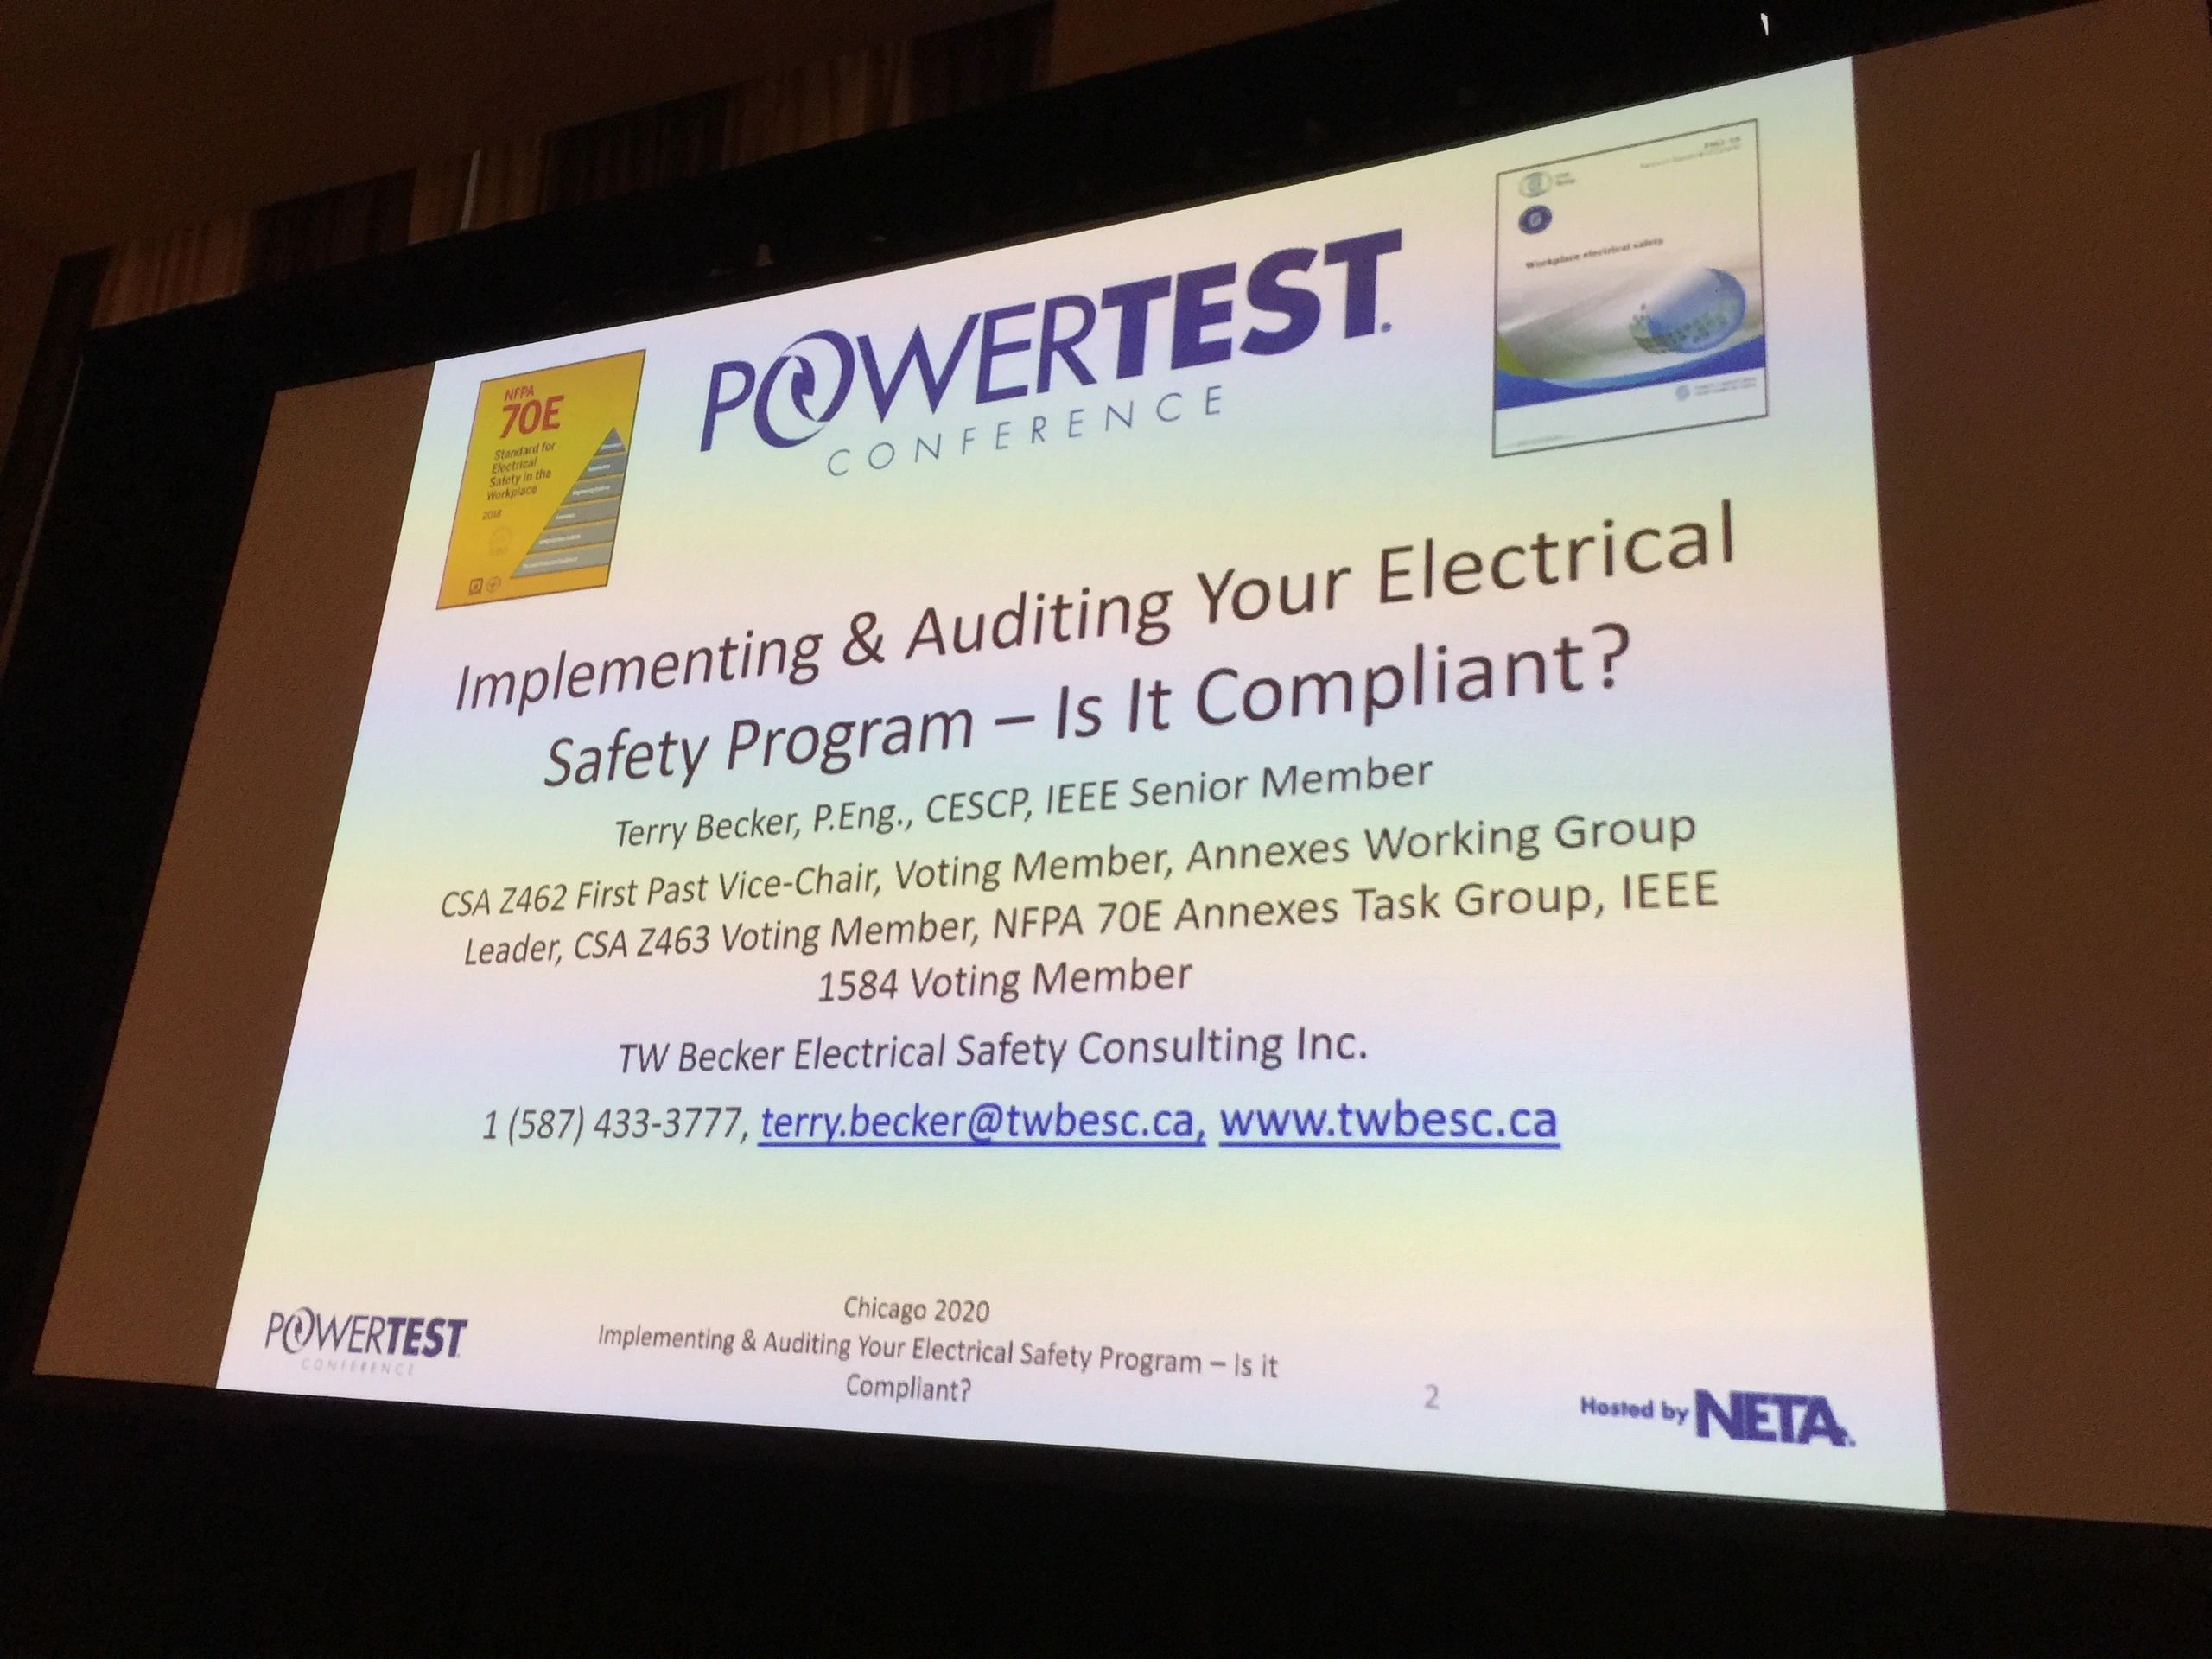 powerpoint slide for NETA powertest conference